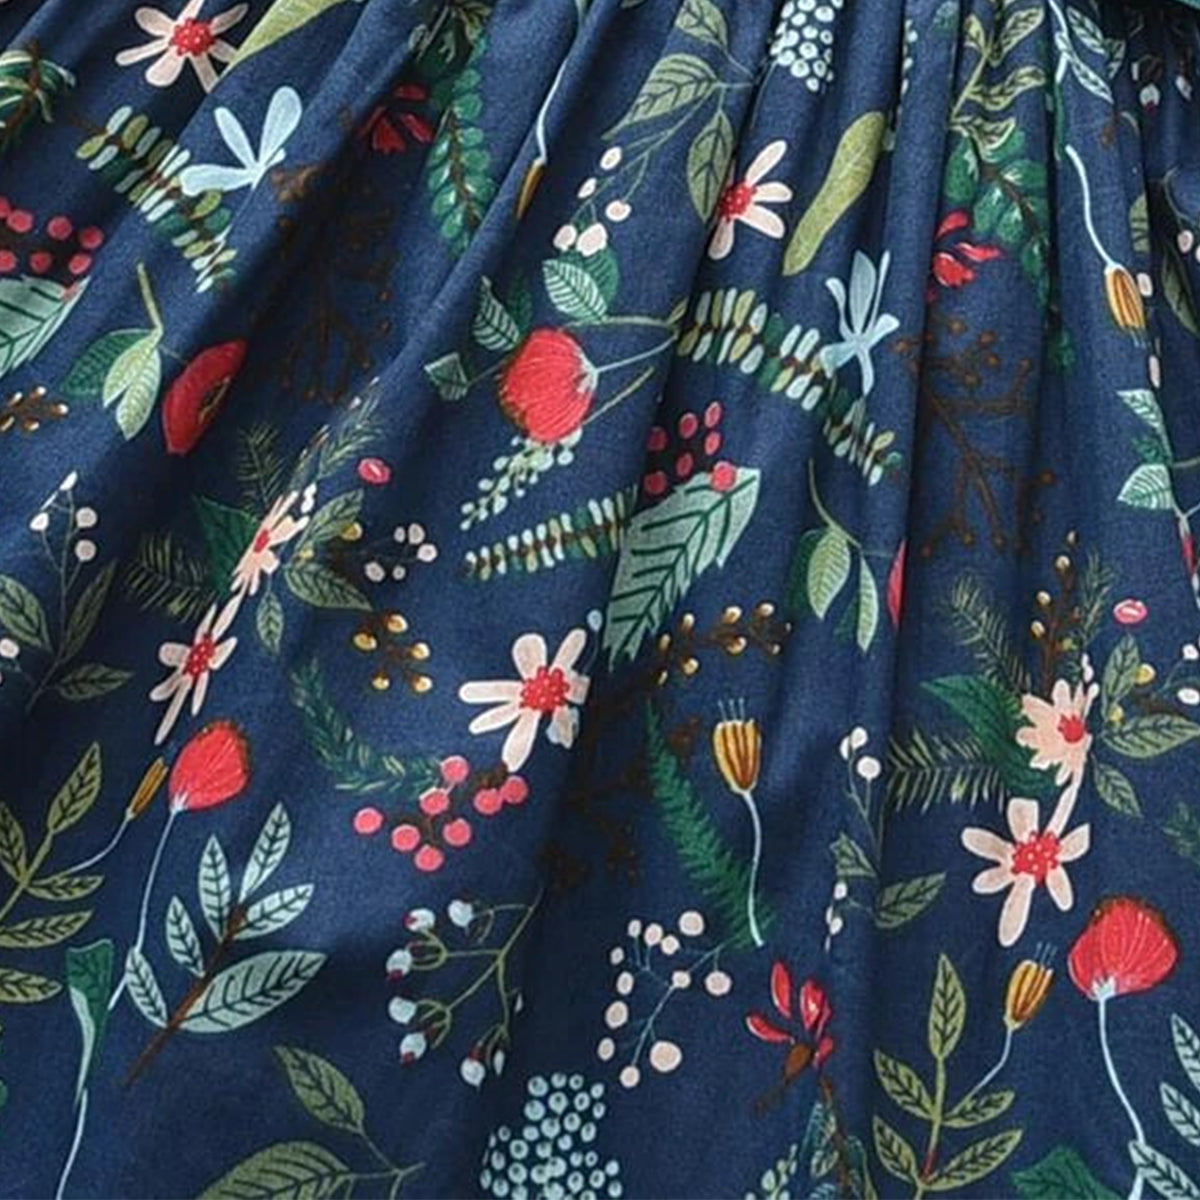 BabyGirl's Cotton Dark Blue Floral Designer Frocks & Dresses for Kids.